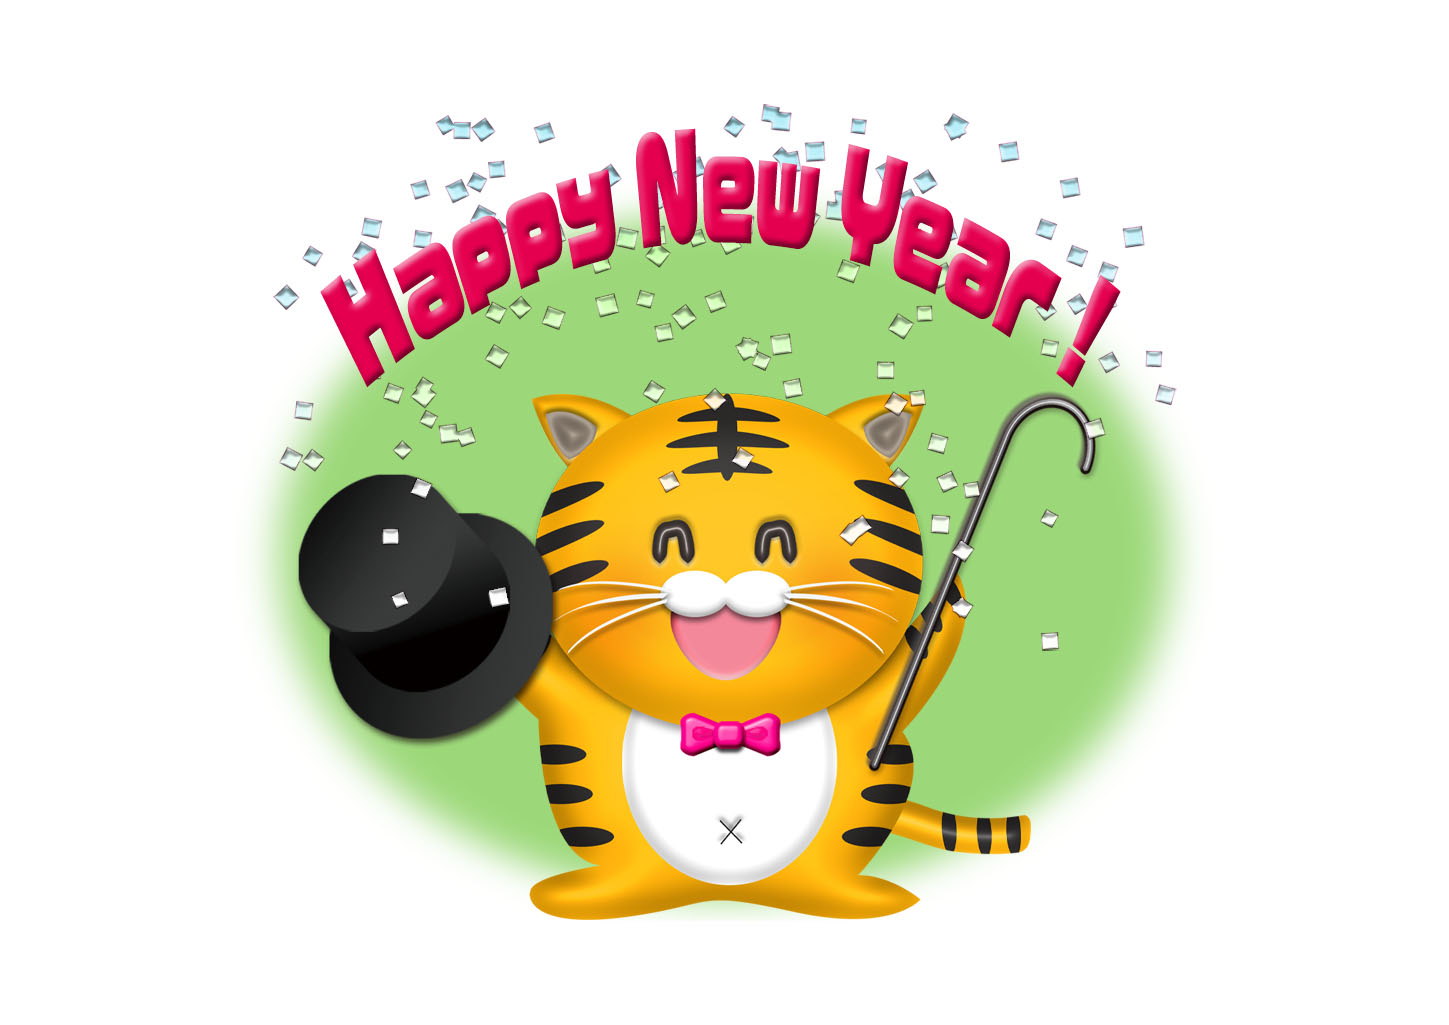 虎が紙吹雪を浴びてHappy New Year！と祝うイラスト